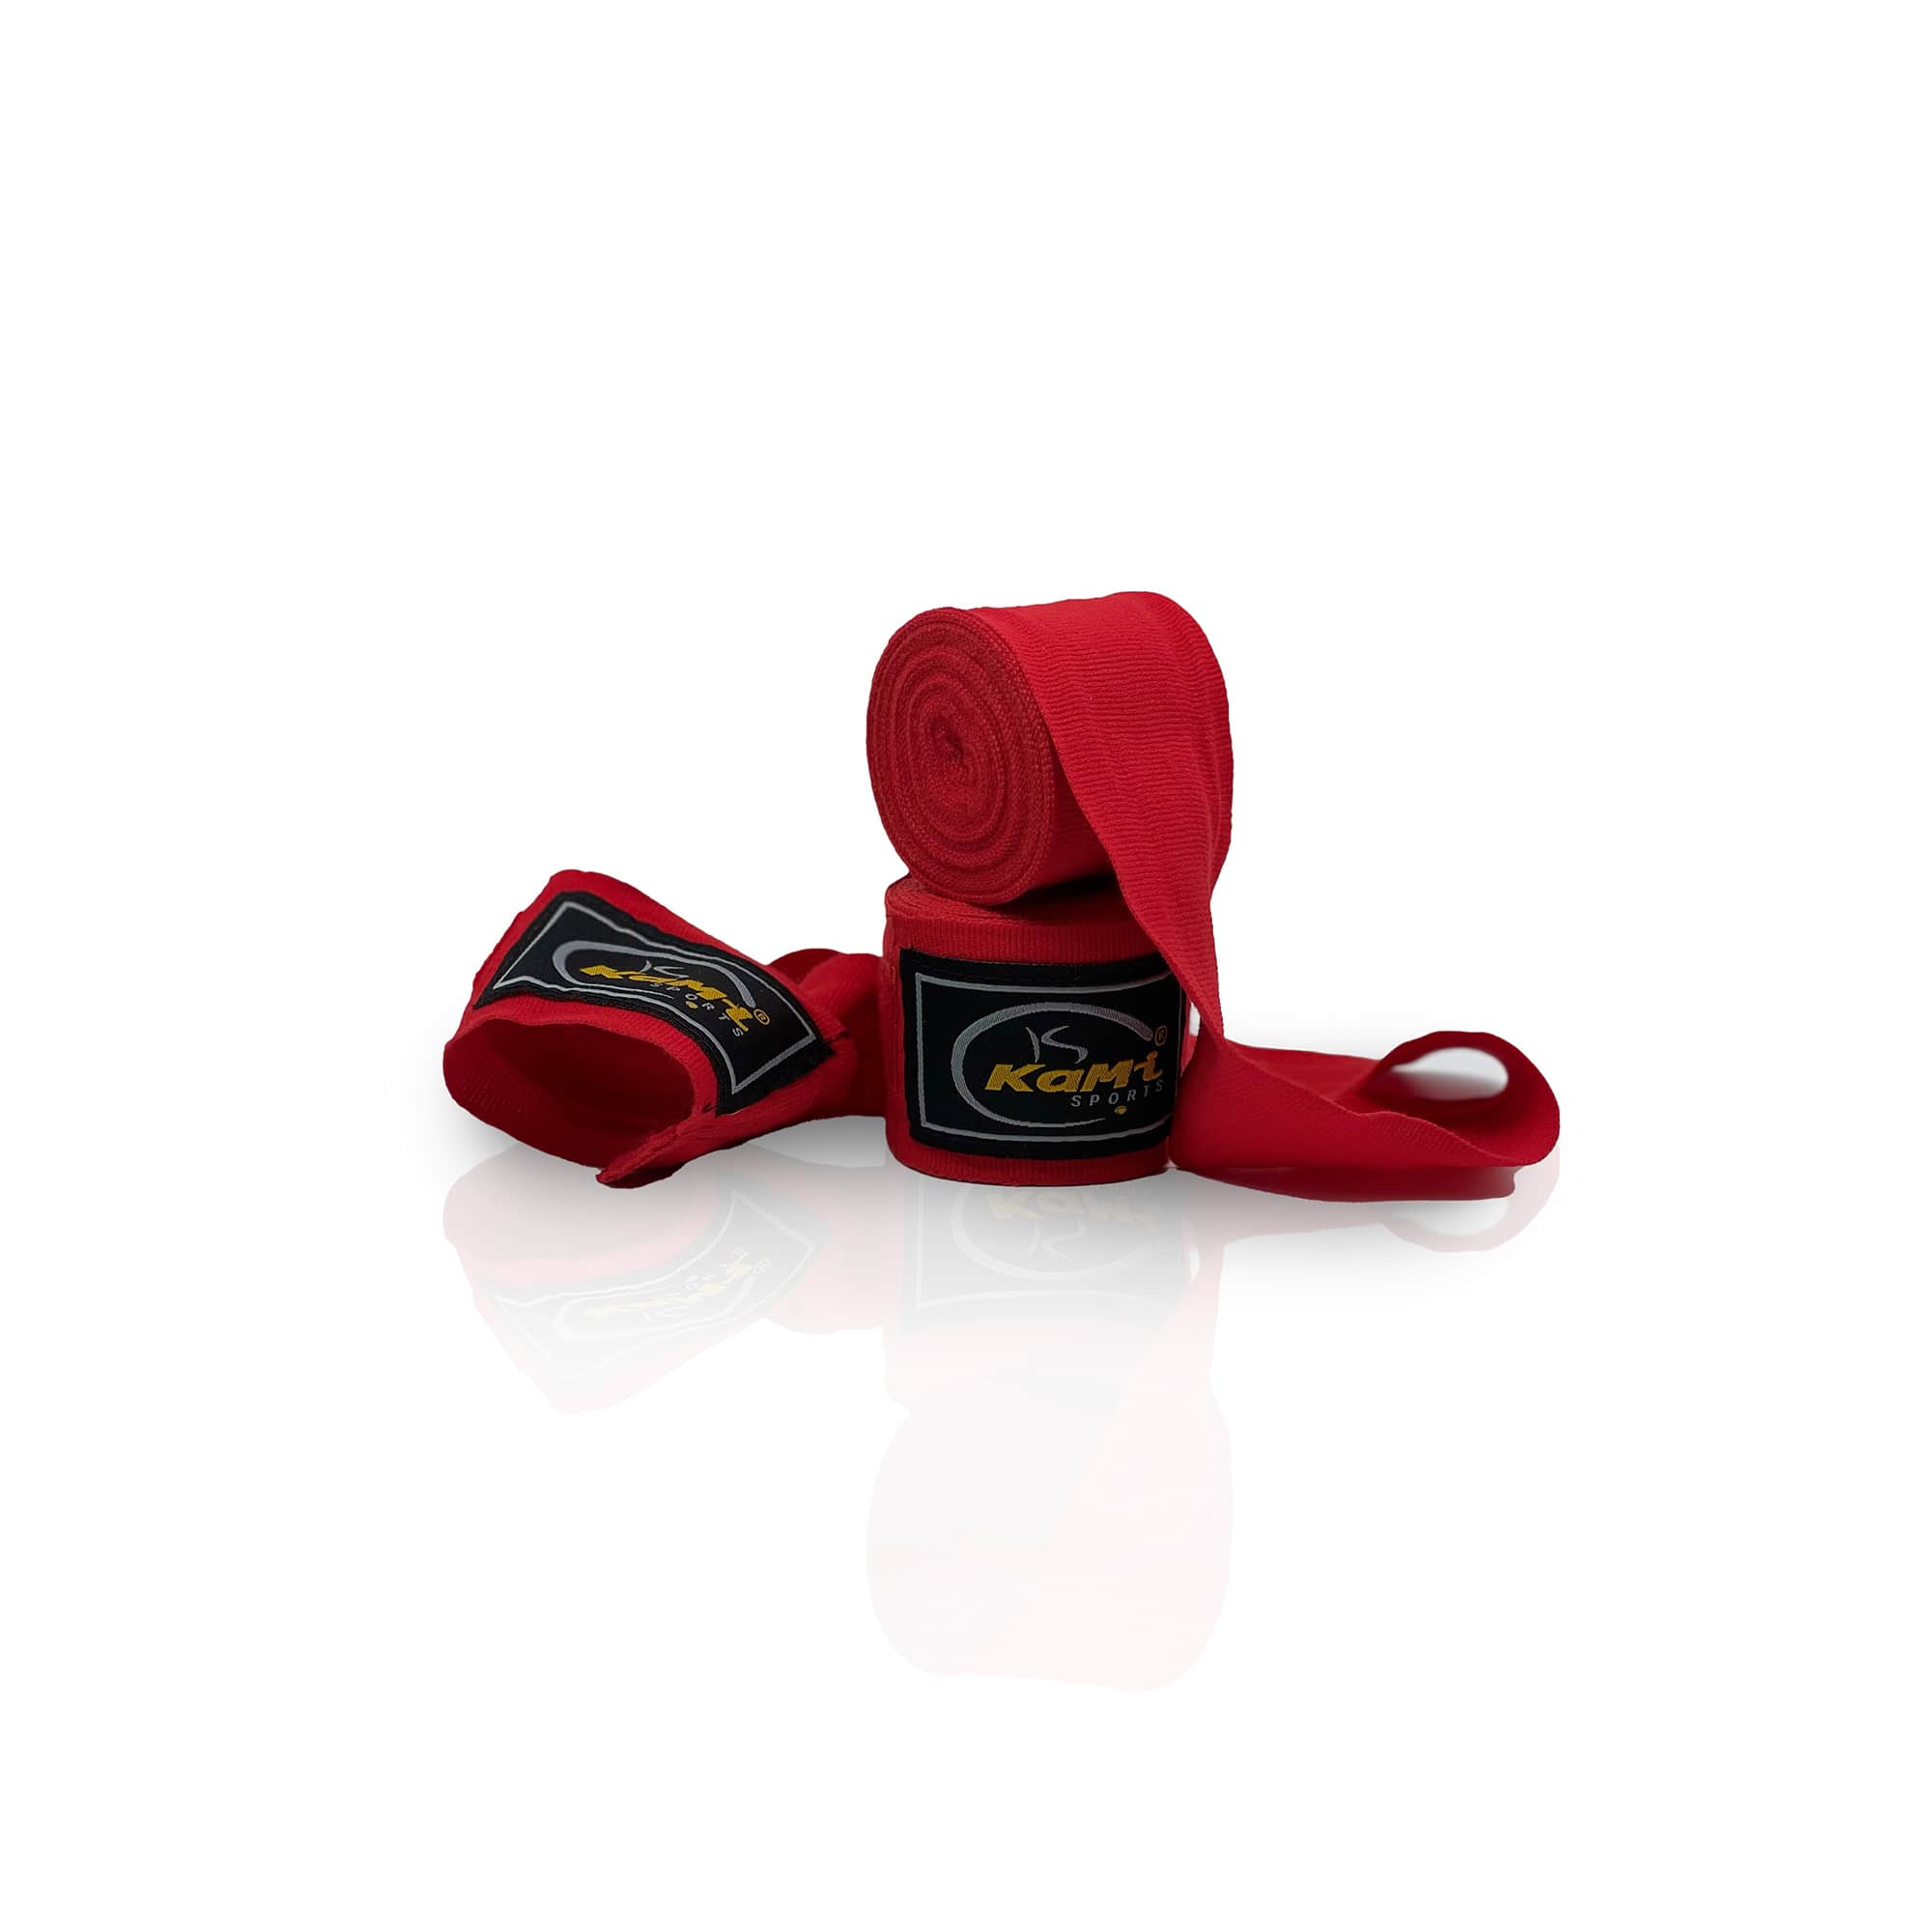 Produktansicht der roten Boxbandage, speziell konzipiert zur Unterstützung und zum Schutz der Hände und Handgelenke im Kampfsport. Hochwertiges Material sorgt für Langlebigkeit und Komfort, während das flexible Design eine individuelle Passform ermöglicht.